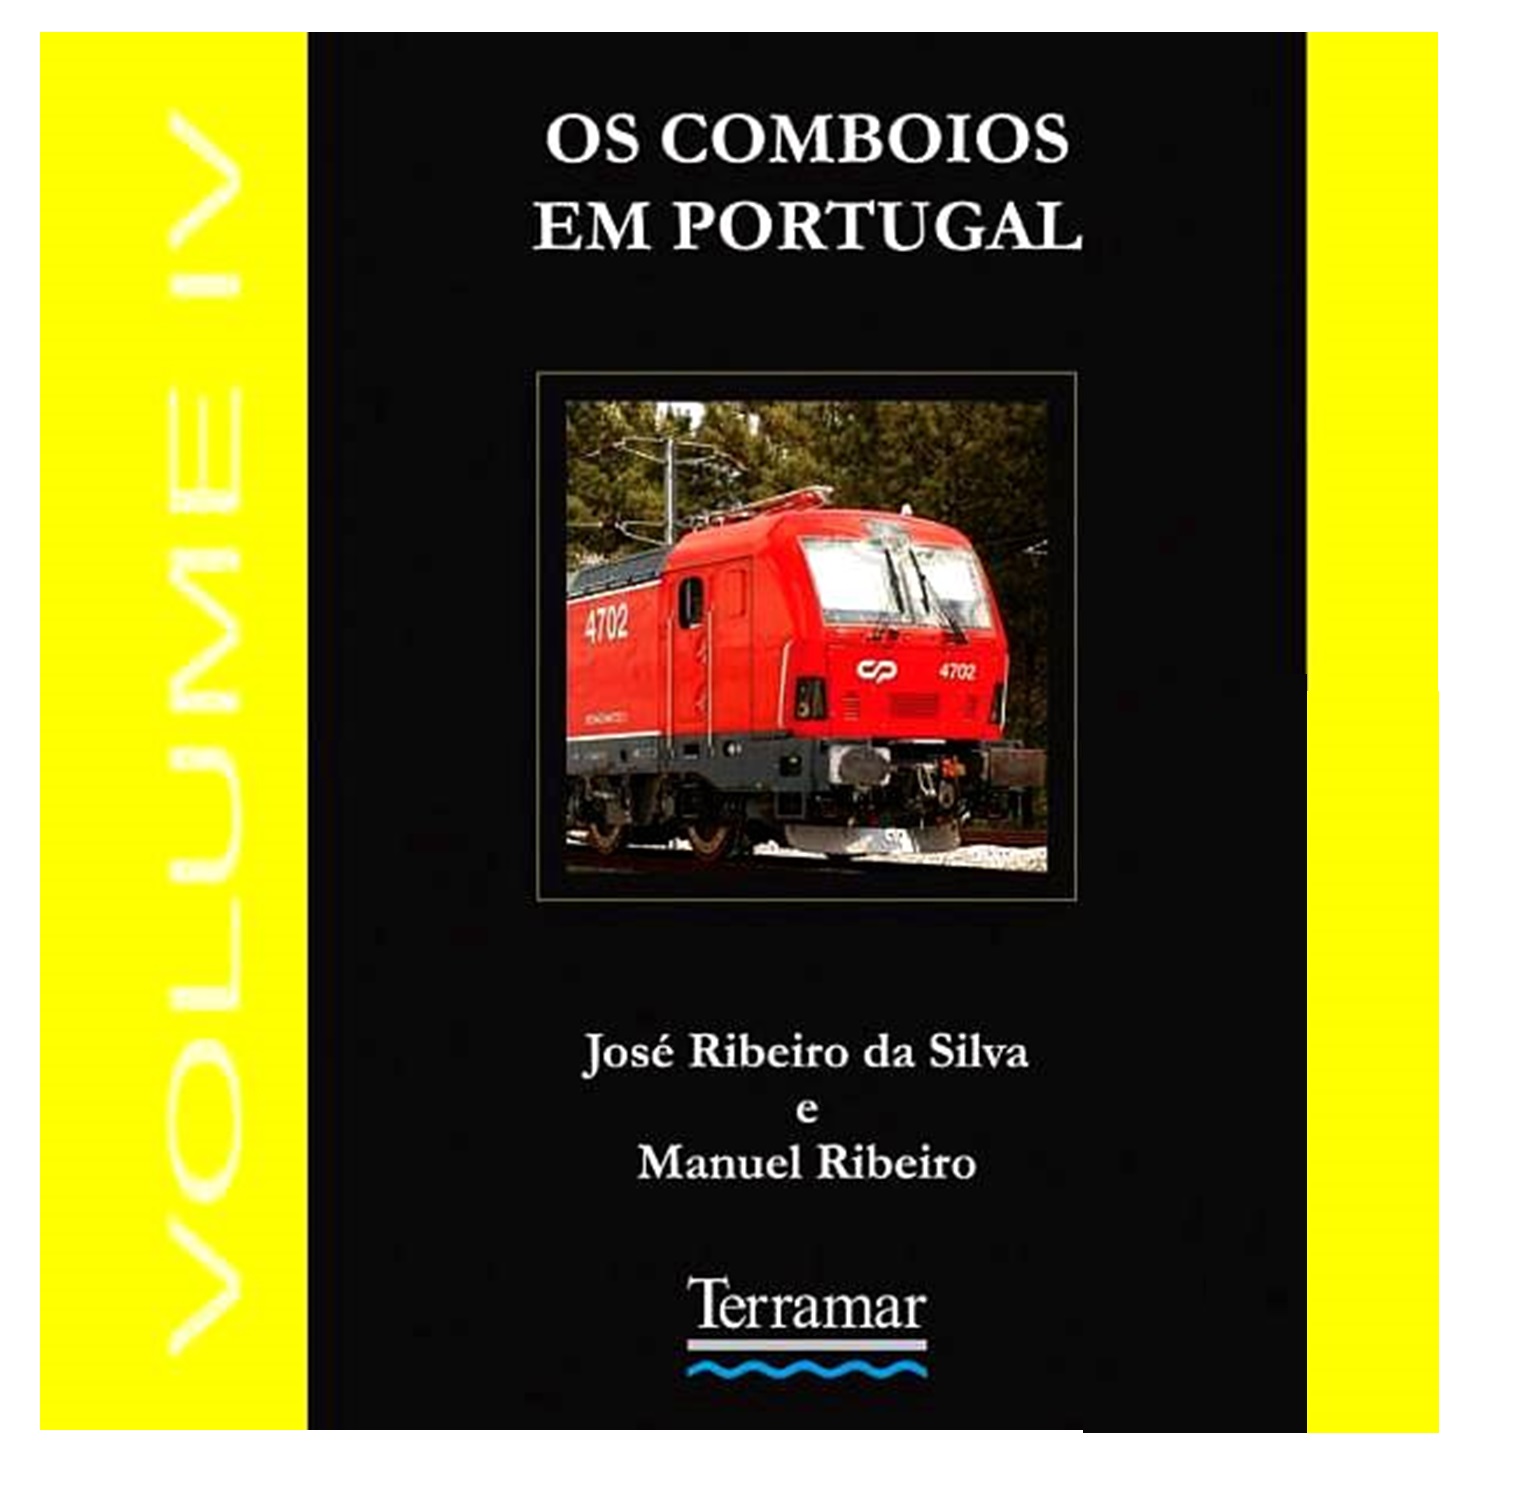 OS COMBOIOS EM PORTUGAL